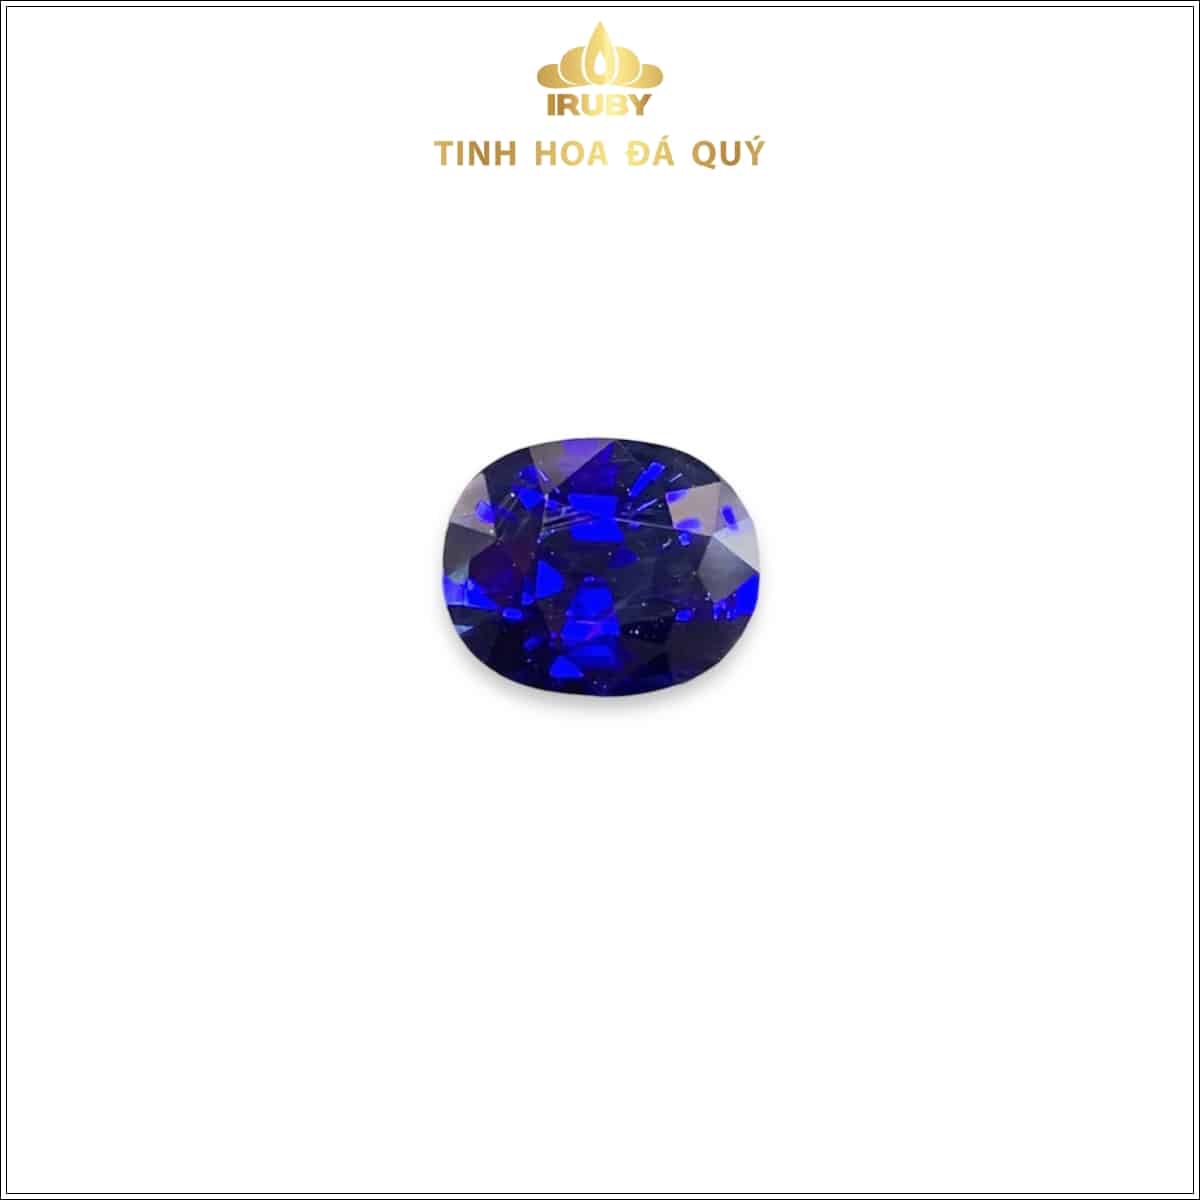 Viên Sapphire màu xanh lam hoàng gia 4,43ct - IRSP 235443